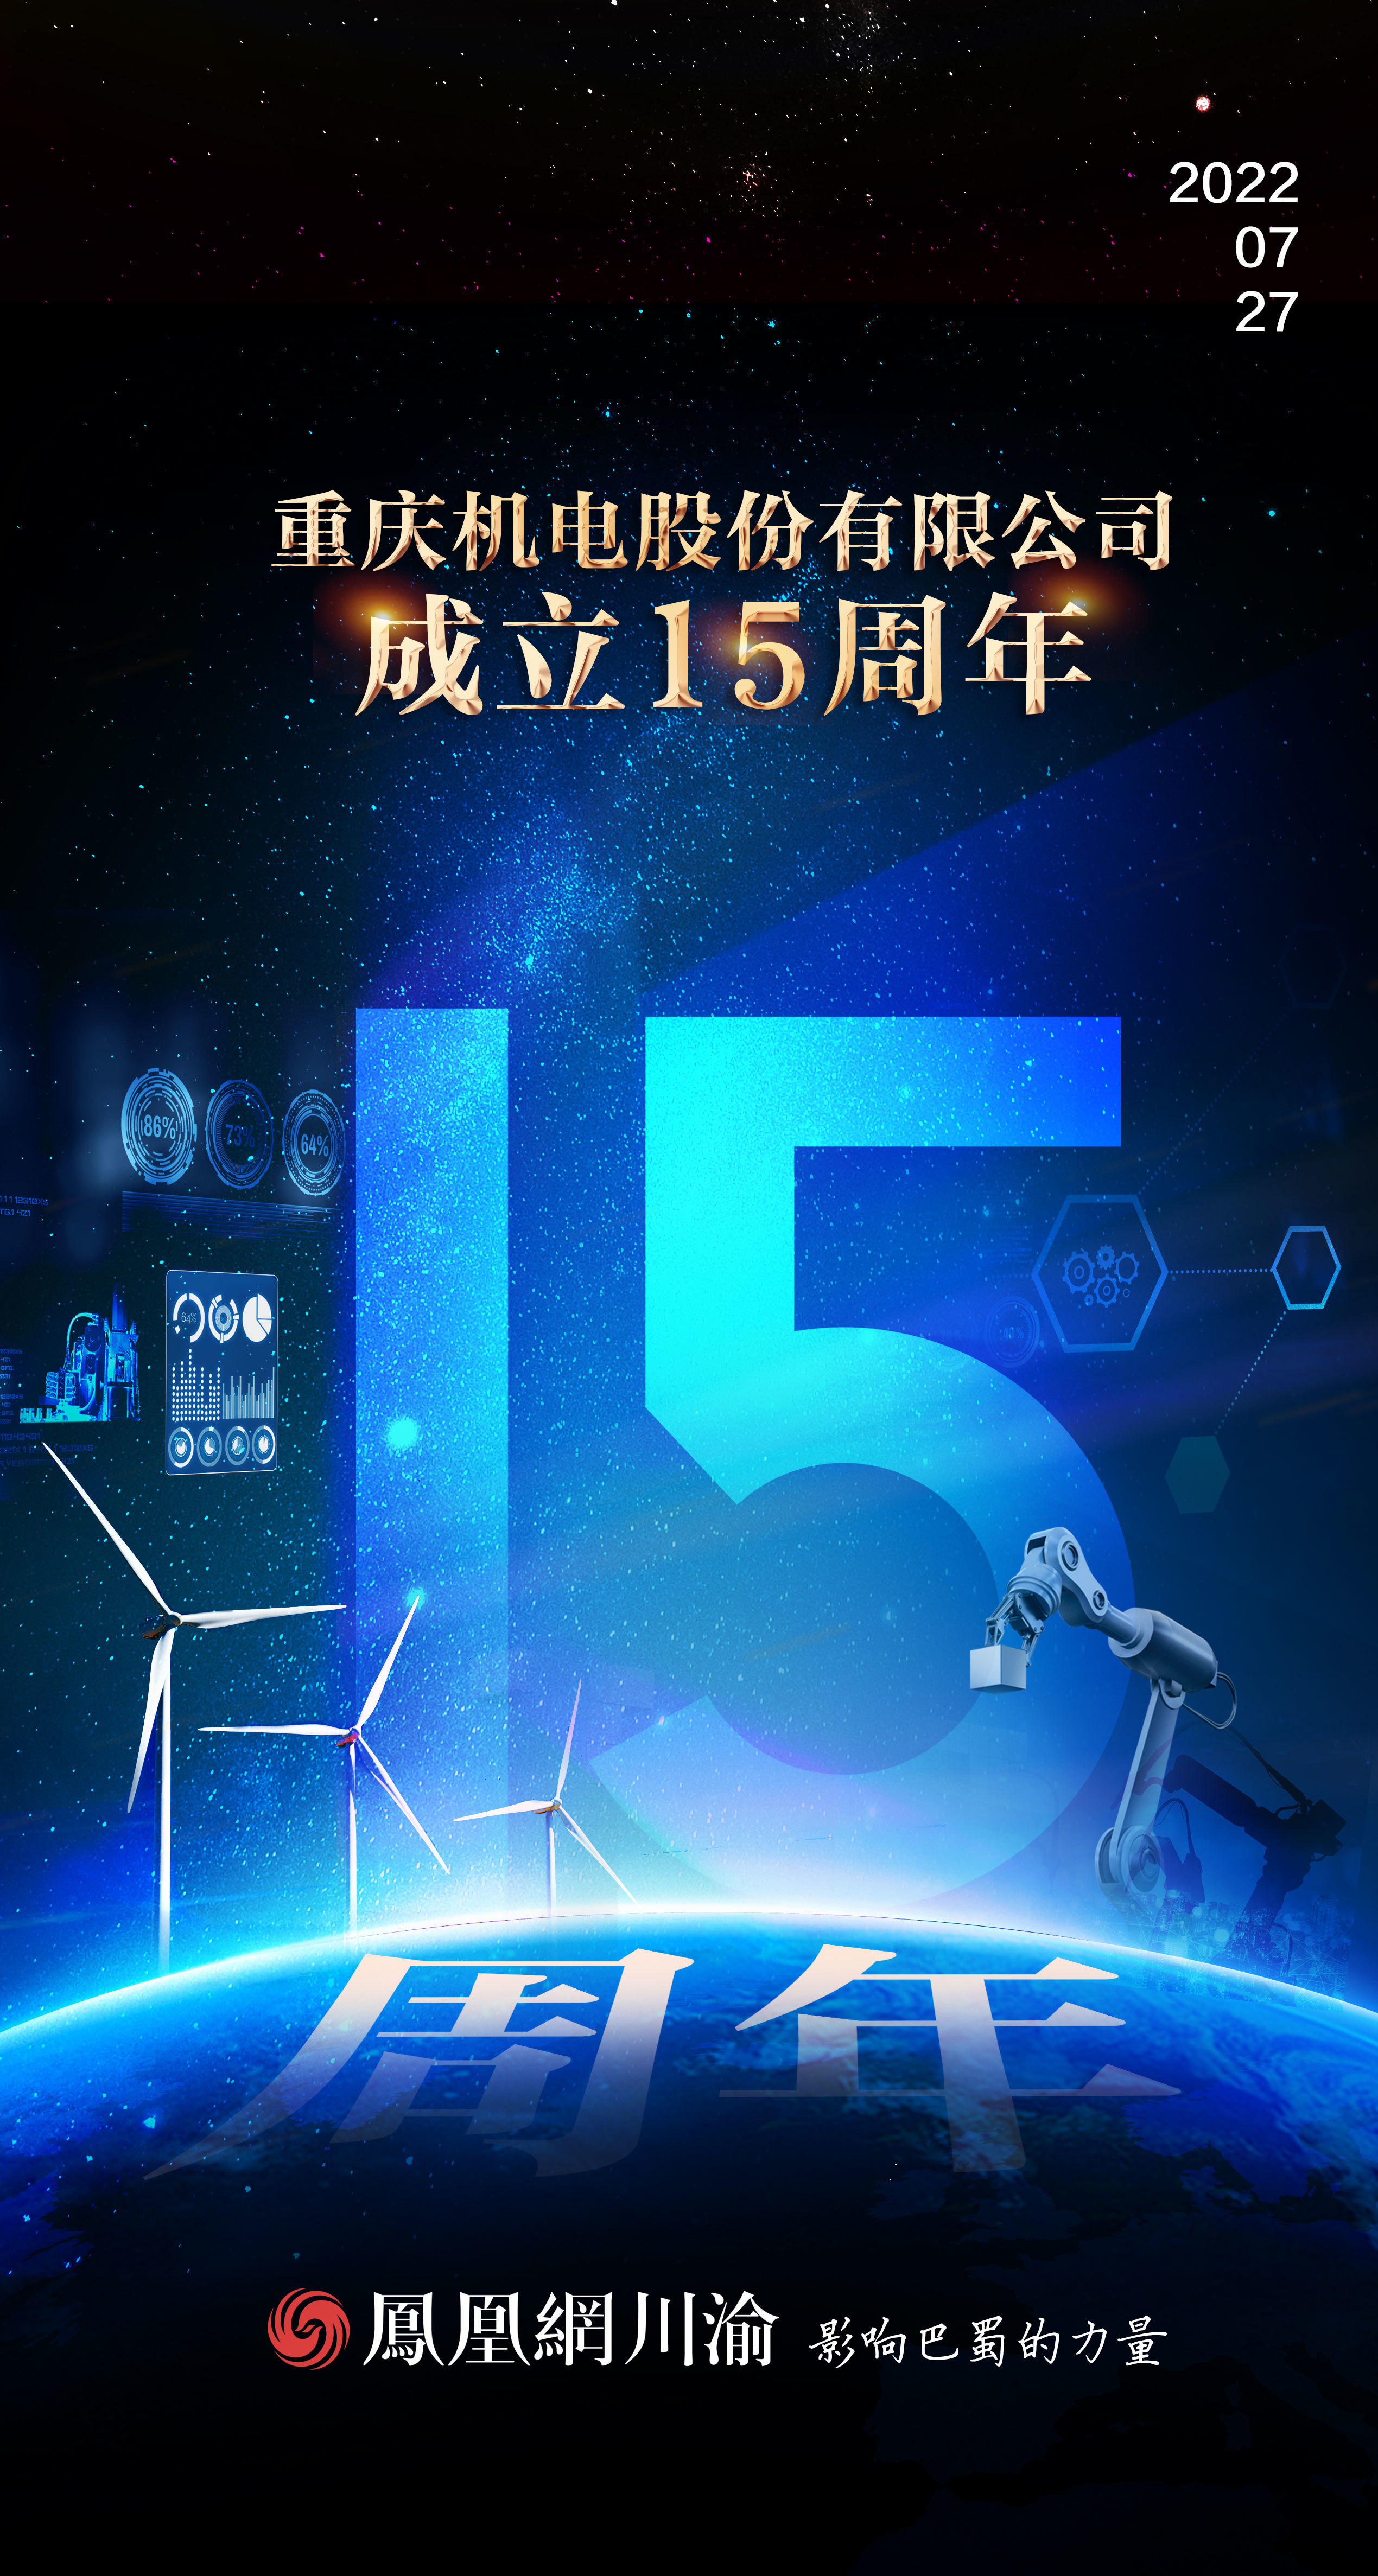 热烈庆祝重庆机电股份有限公司成立15周年